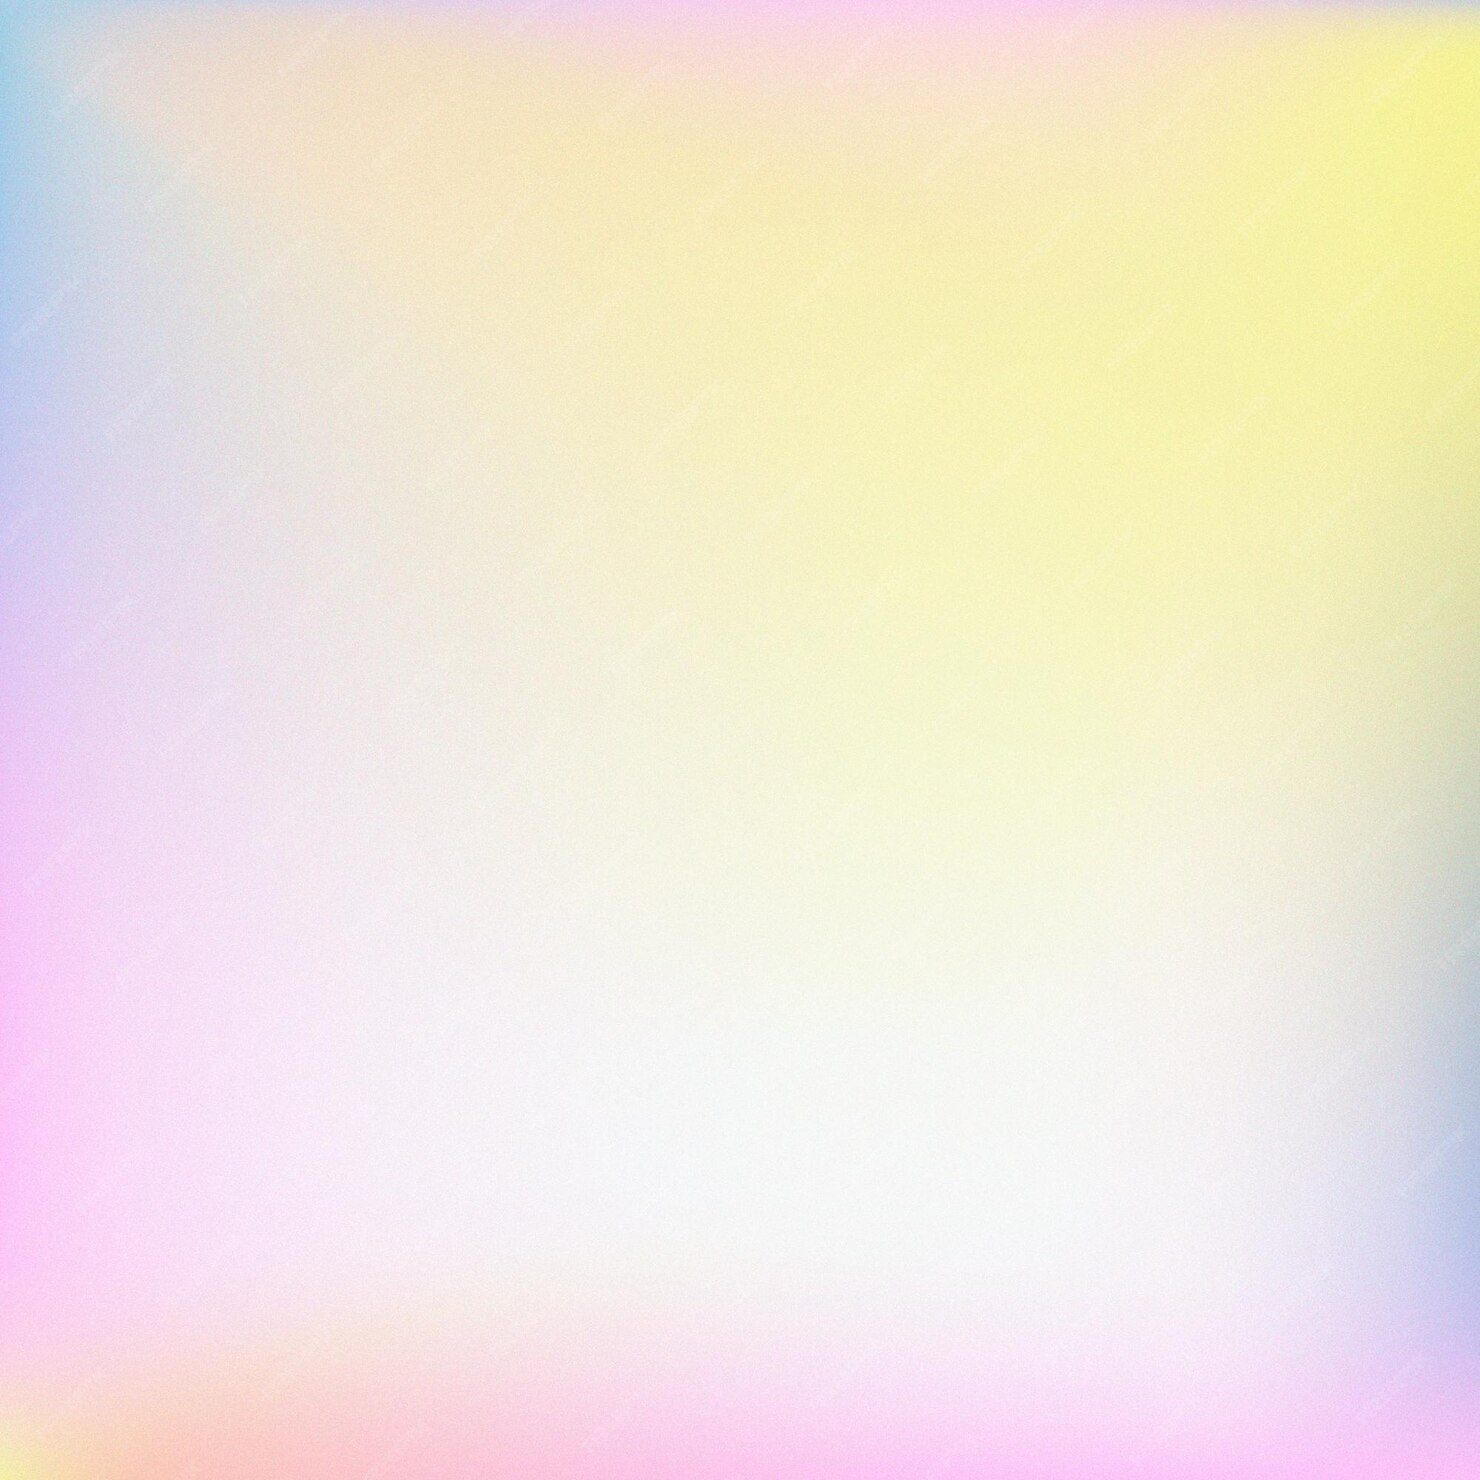 Free Vector | Pastel gradient blur background